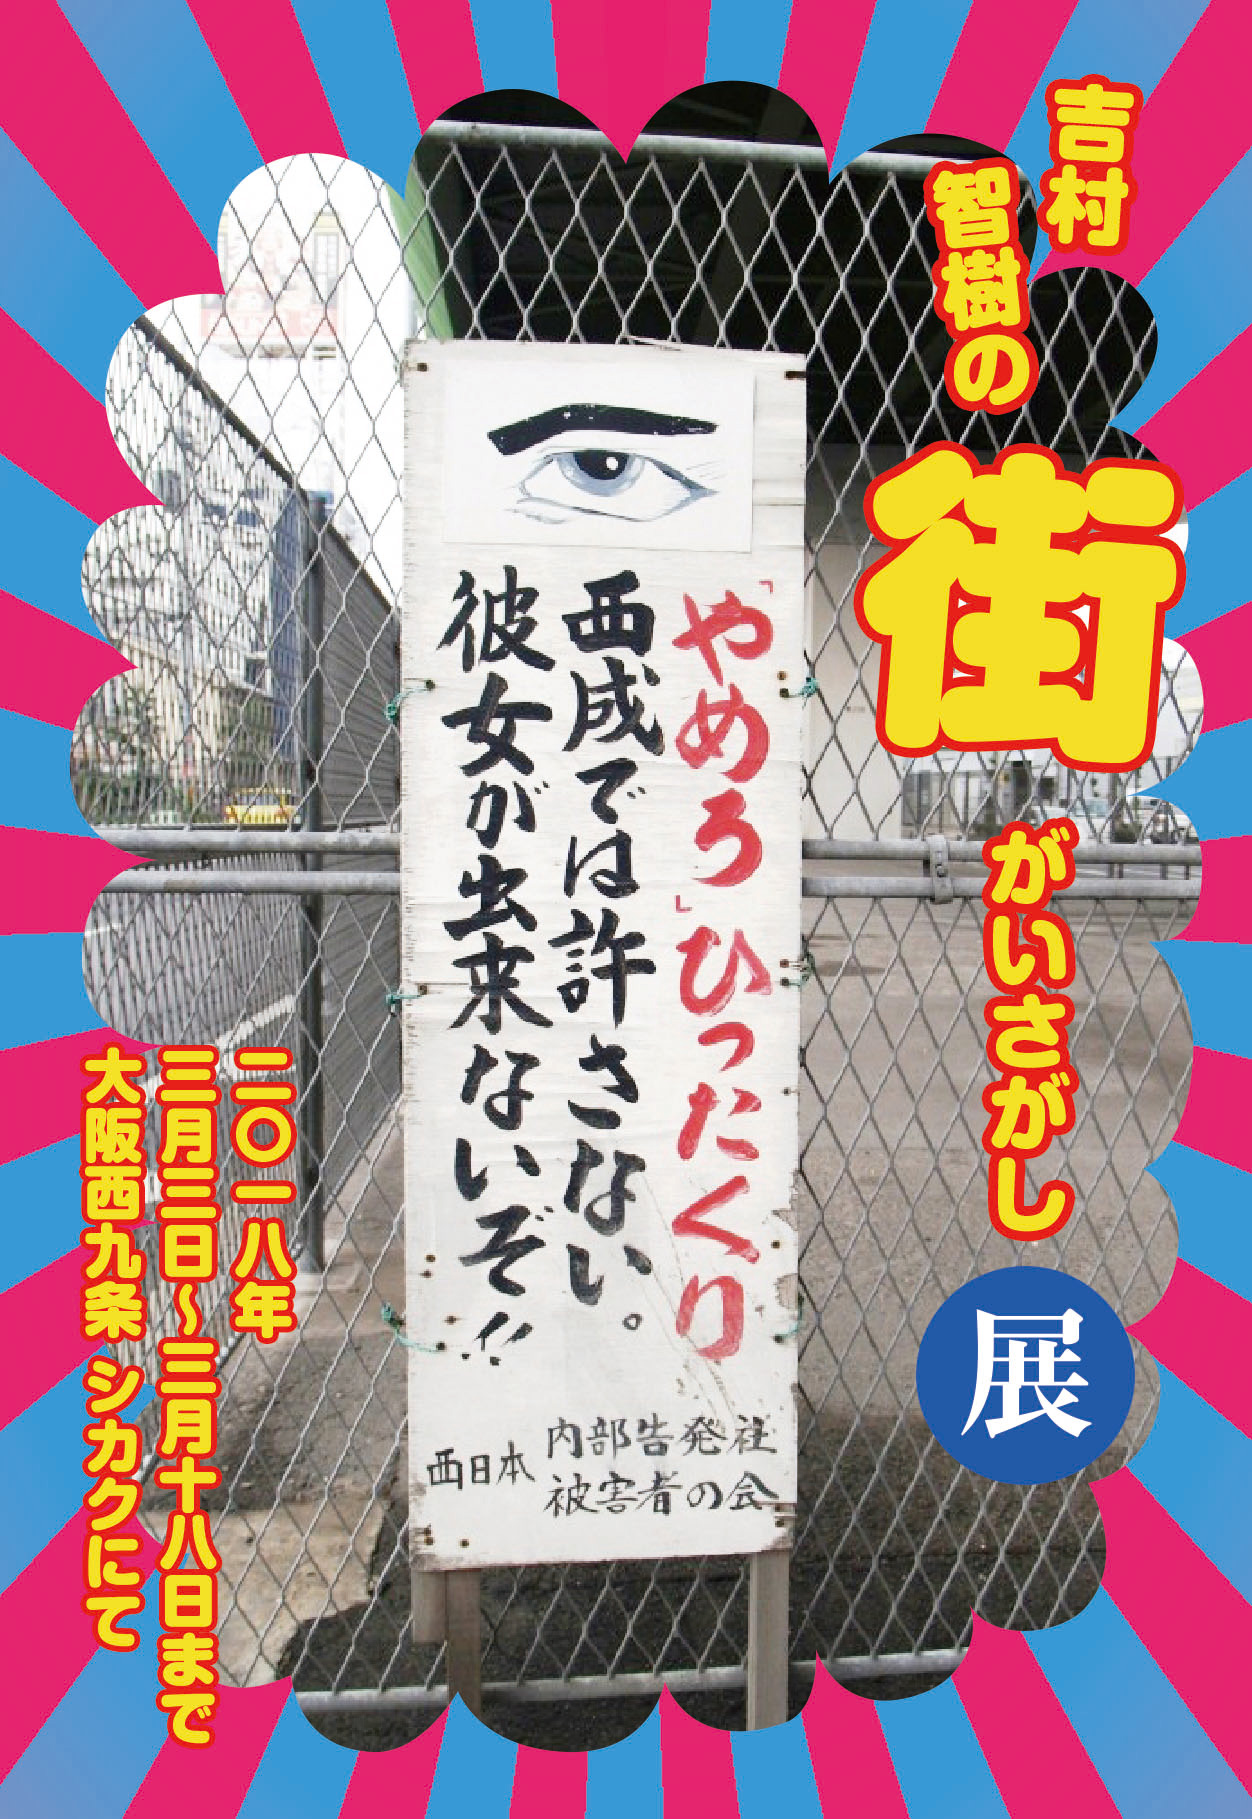 吉村智樹の街がいさがし 街で見つけたヘンな看板